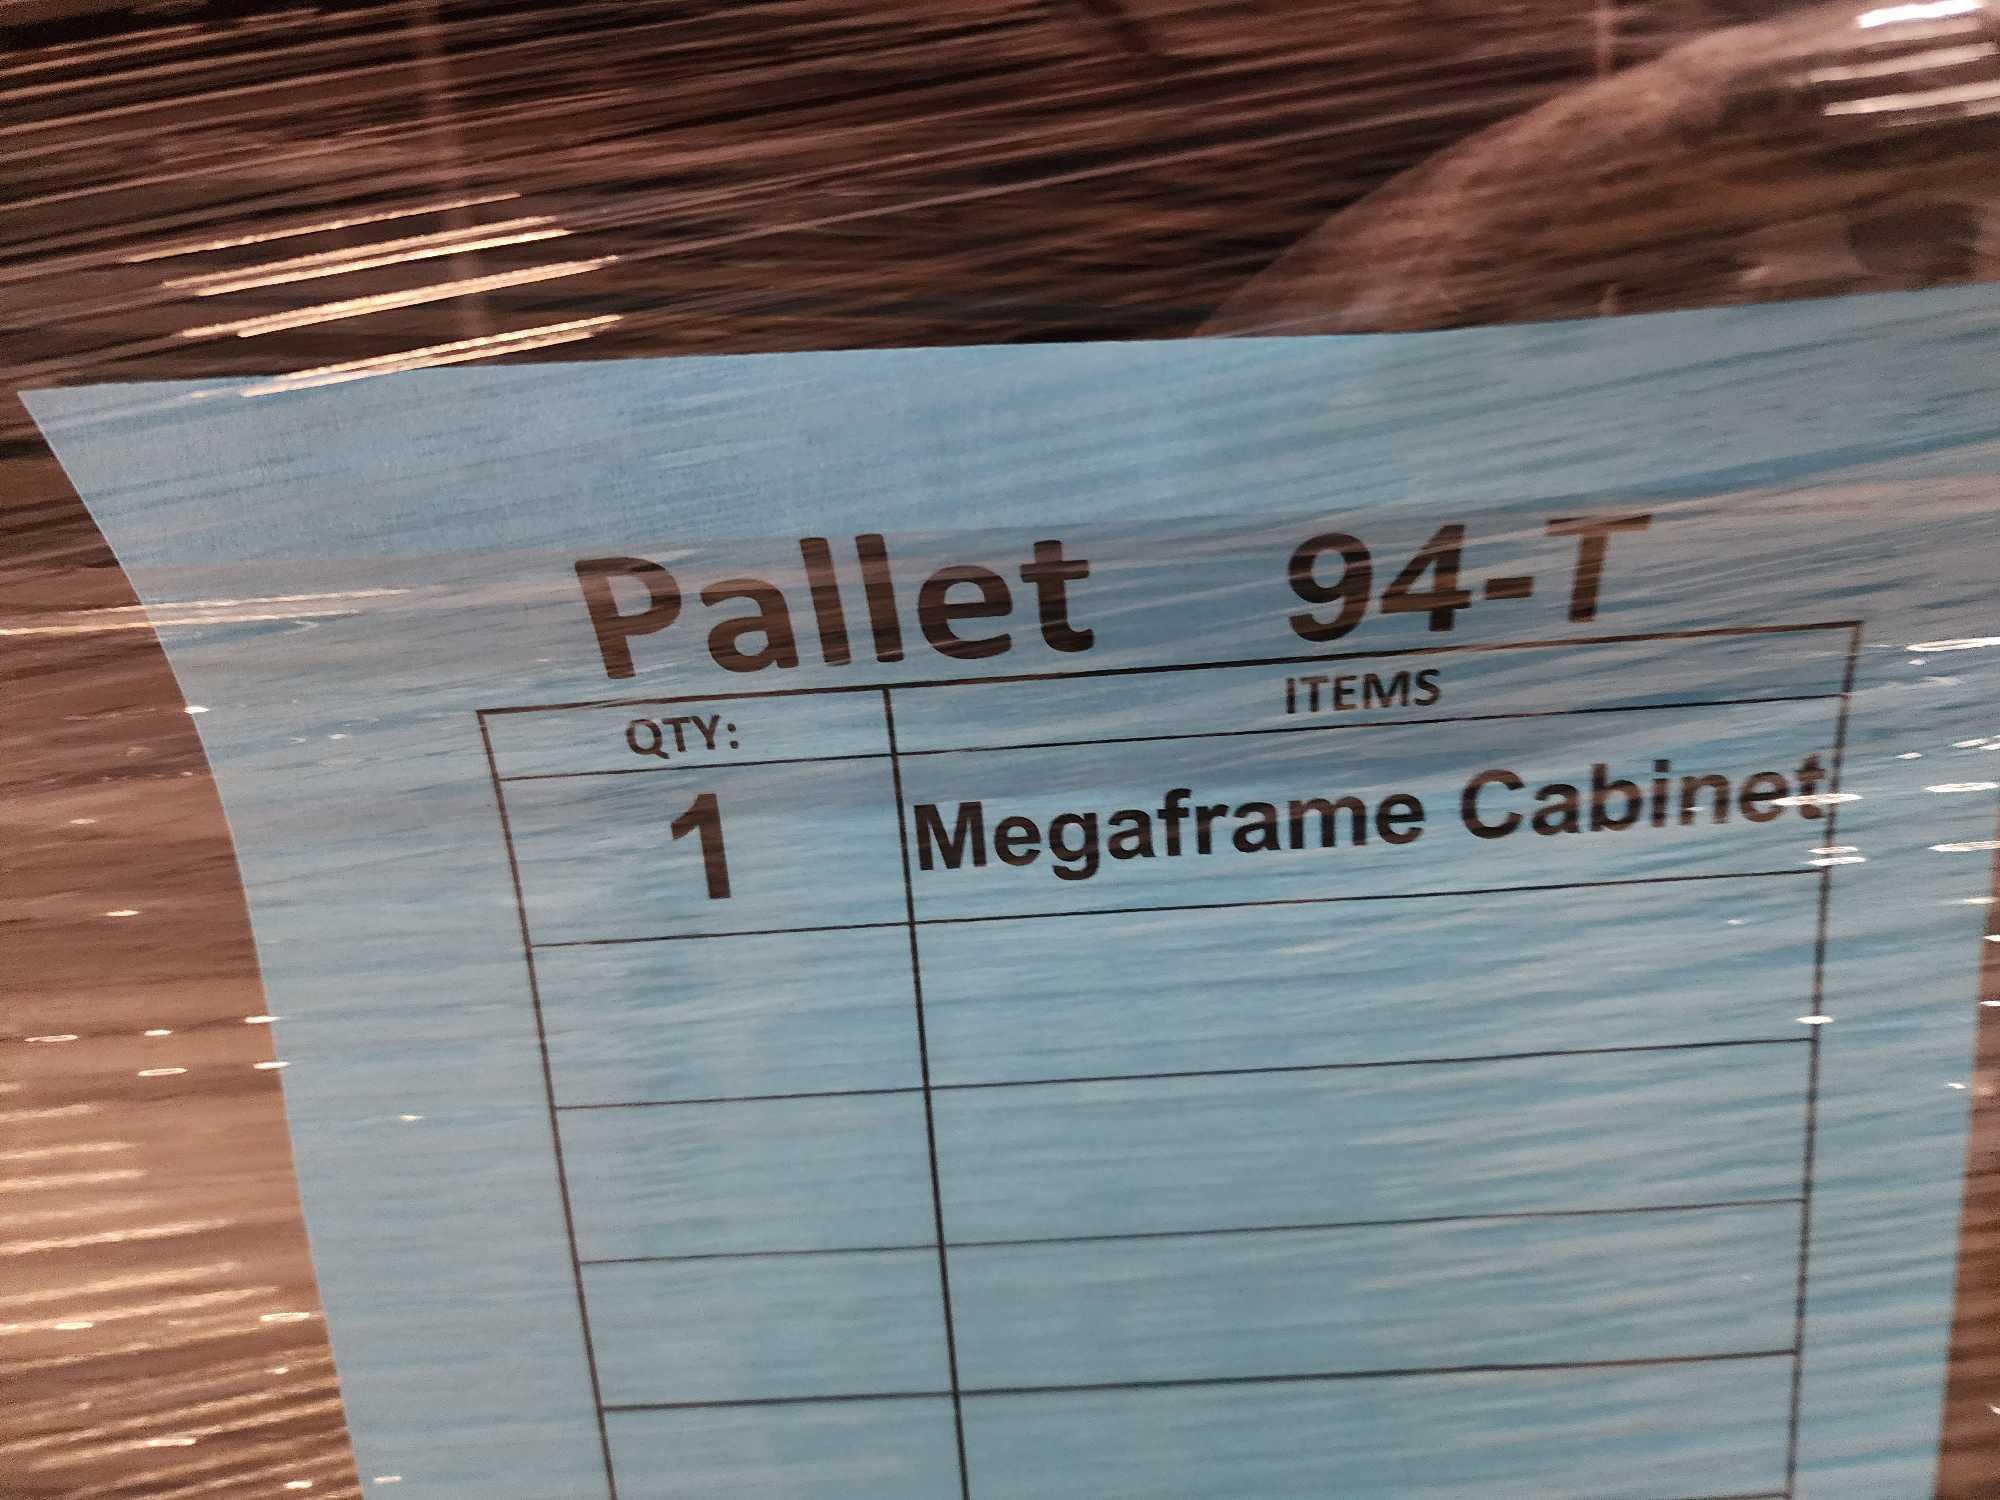 (1) Megaframe Cabinet